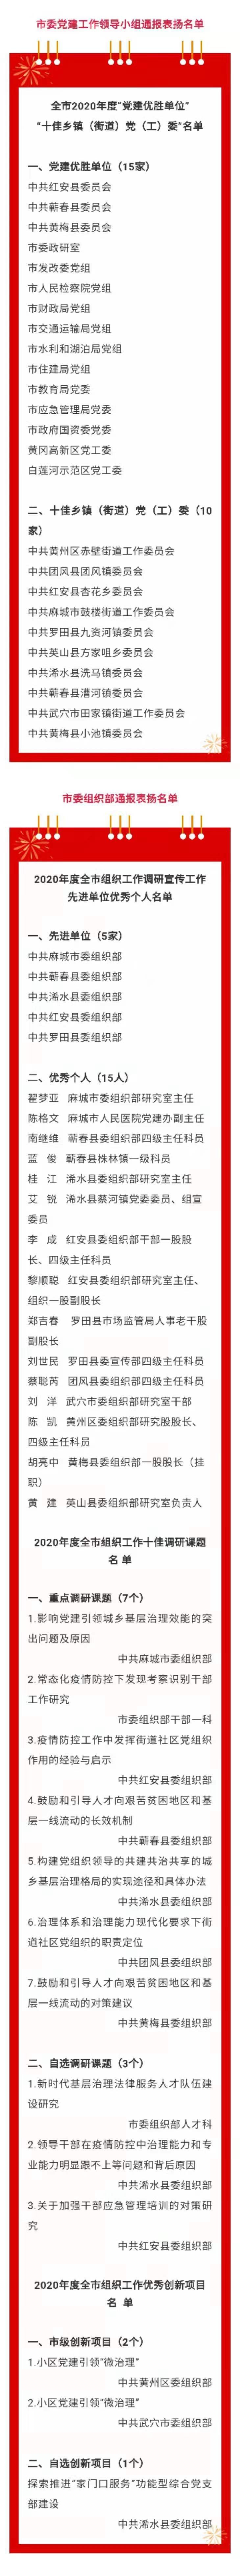 黄冈组织系统公布170个表彰名单，其中党建优胜单位15家